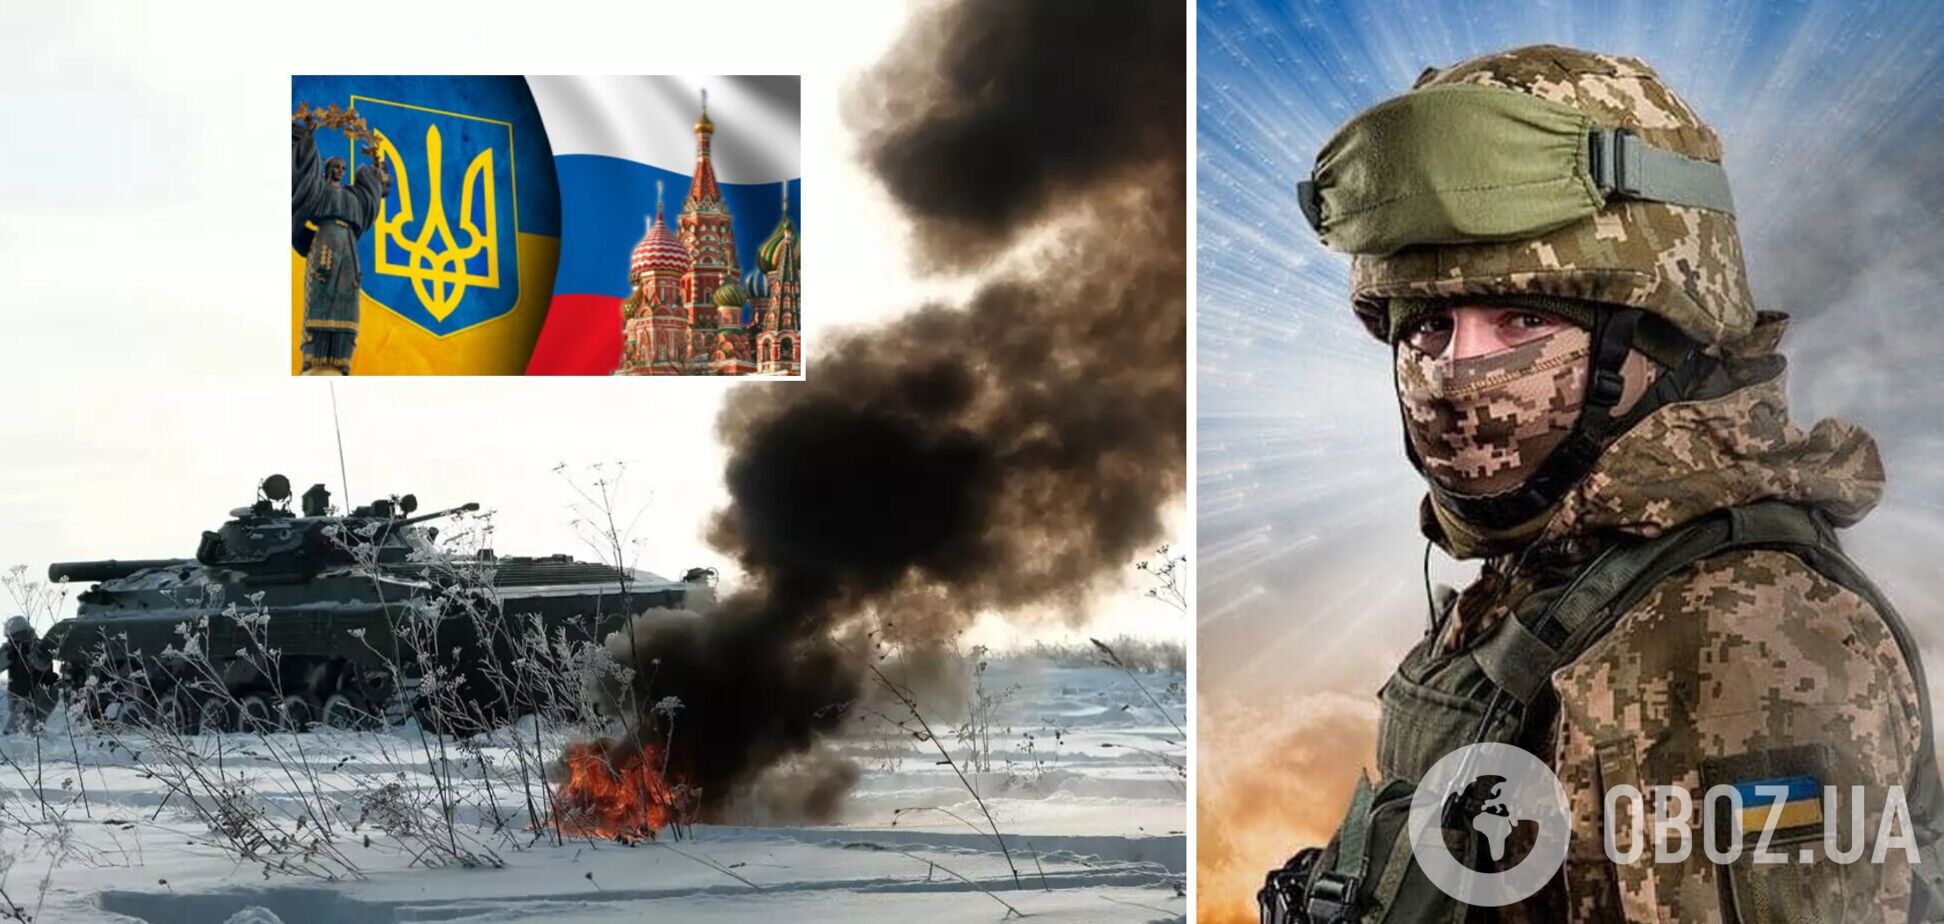 Переговоры стартовали! Украина обсуждает с Россией прекращение войны: все детали